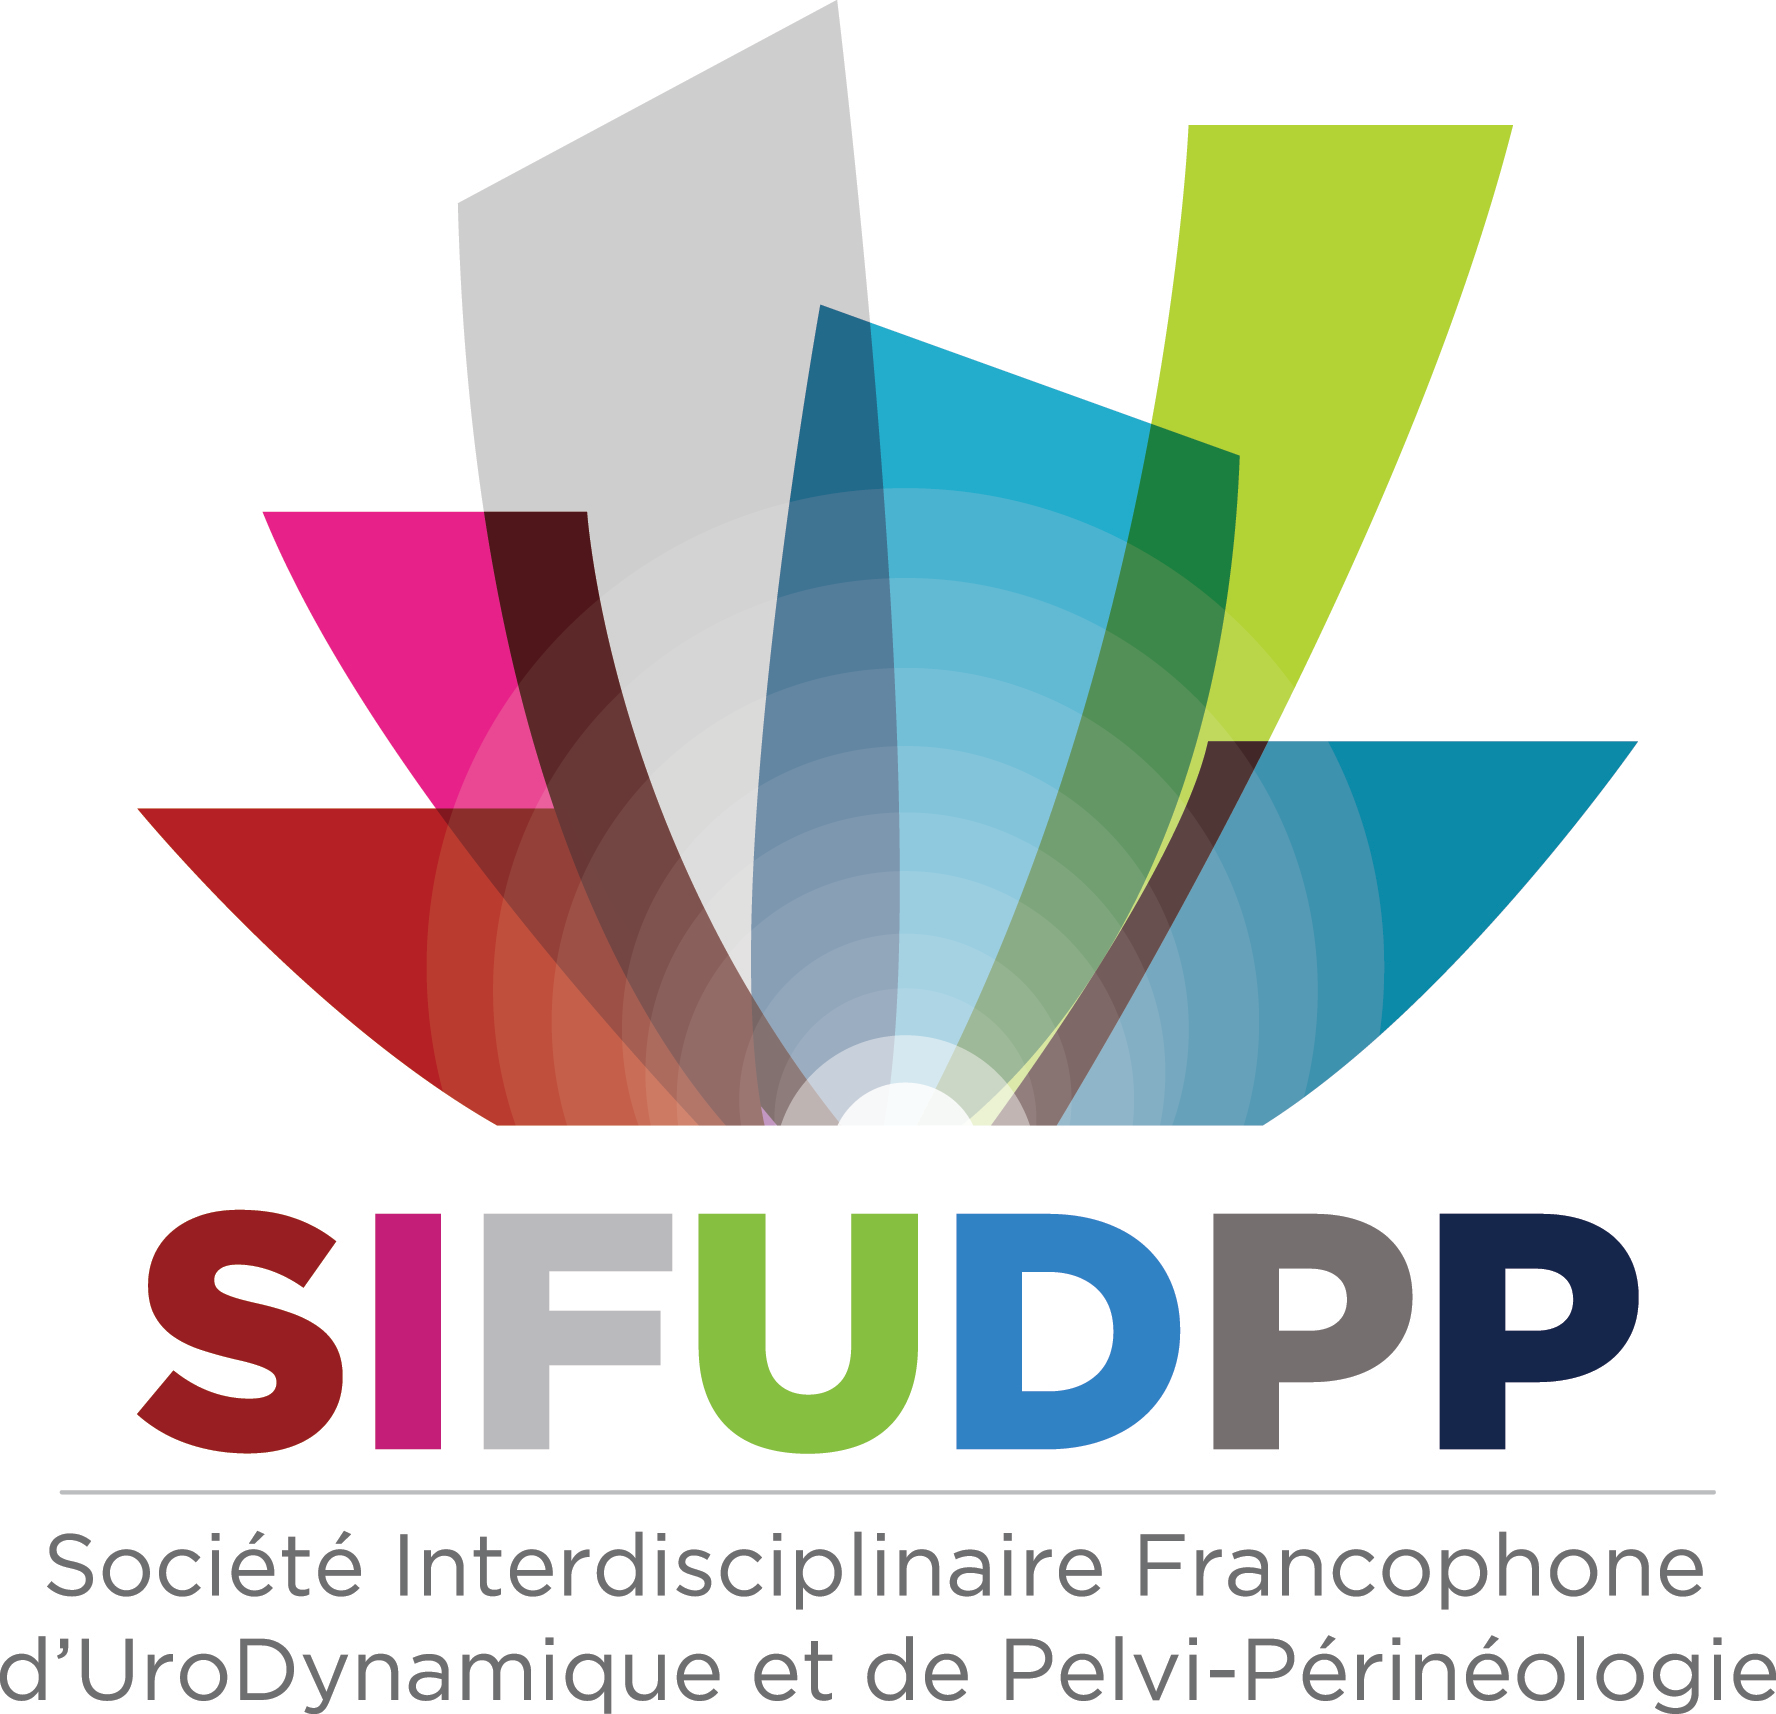 SIFUD-PP La Baule 2015 : ATELIER 5 - L'insuffisance sphinctérienne en uro-gynécologie